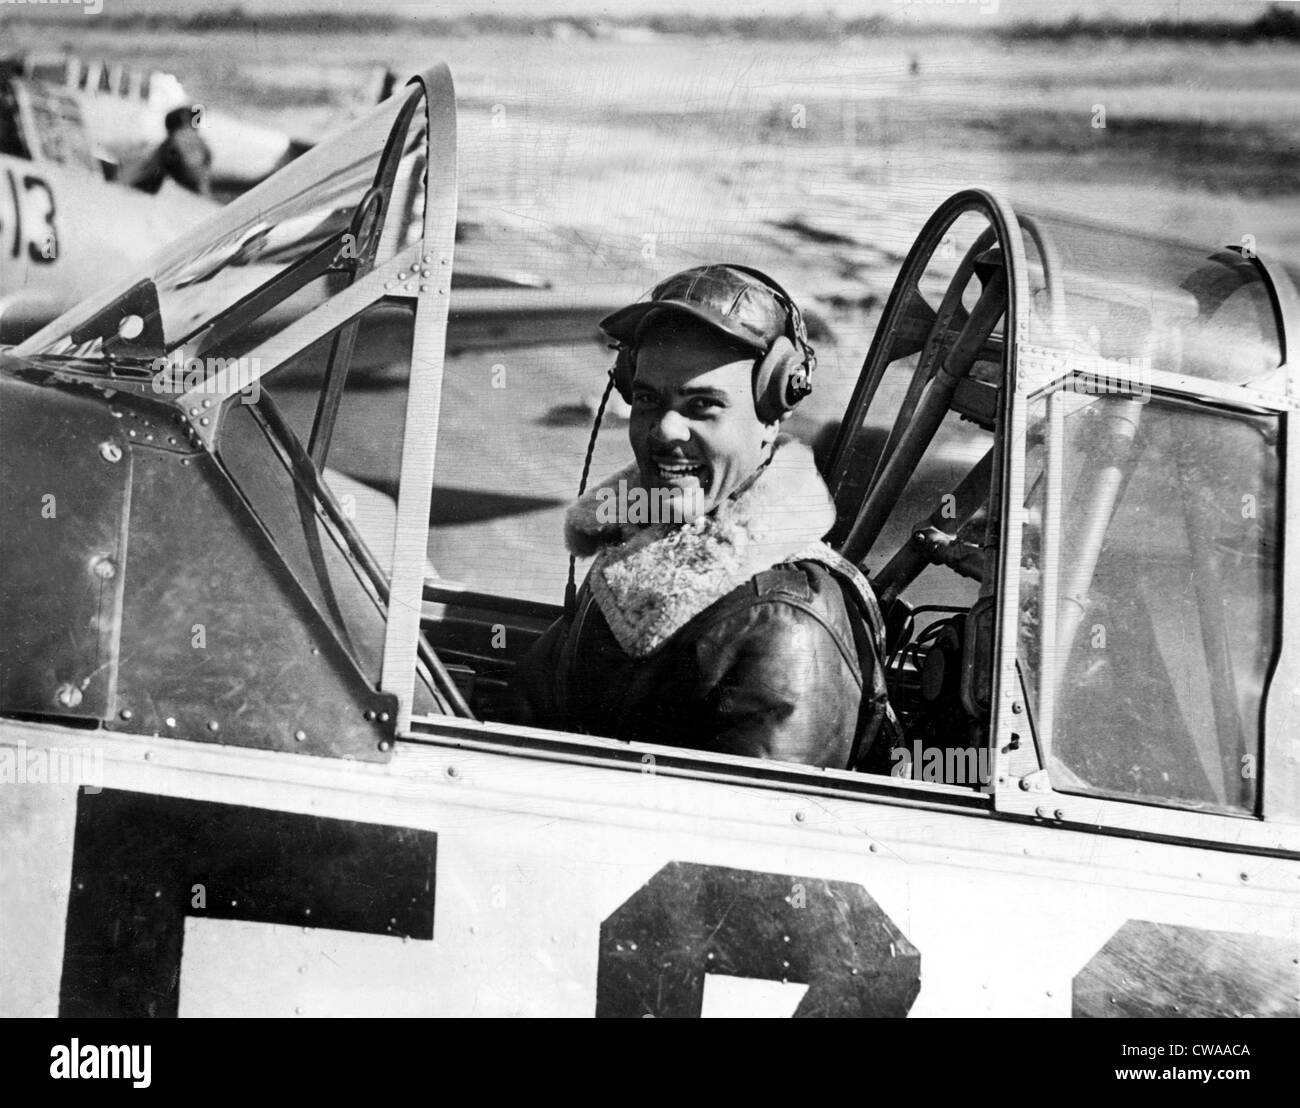 Il capitano Benjamin Oliver Davis del 99th Pursuit Squadron, mostrato nel pozzetto di un trainer anticipi, Tuskegee, Alabama, Foto Stock